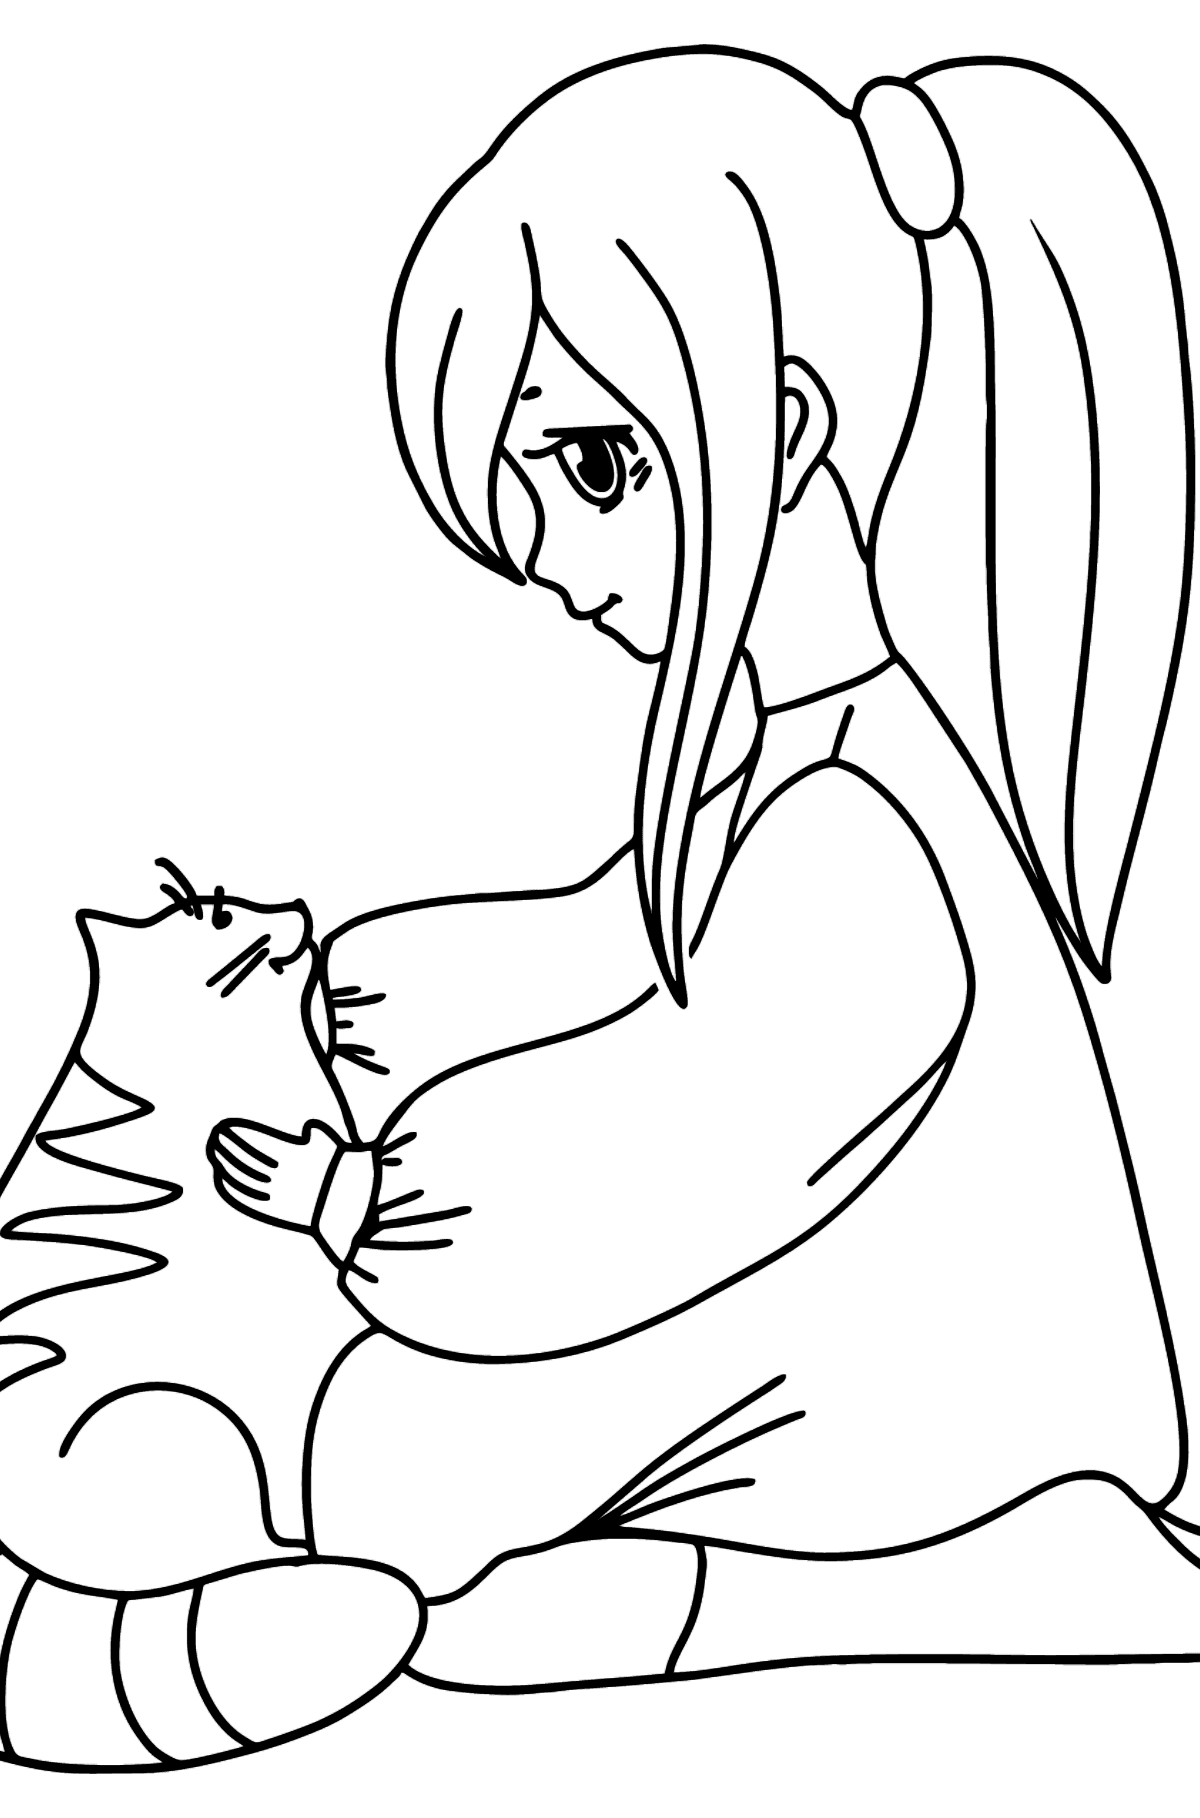 Anime jente og katt tegning til fargelegging - Tegninger til fargelegging for barn